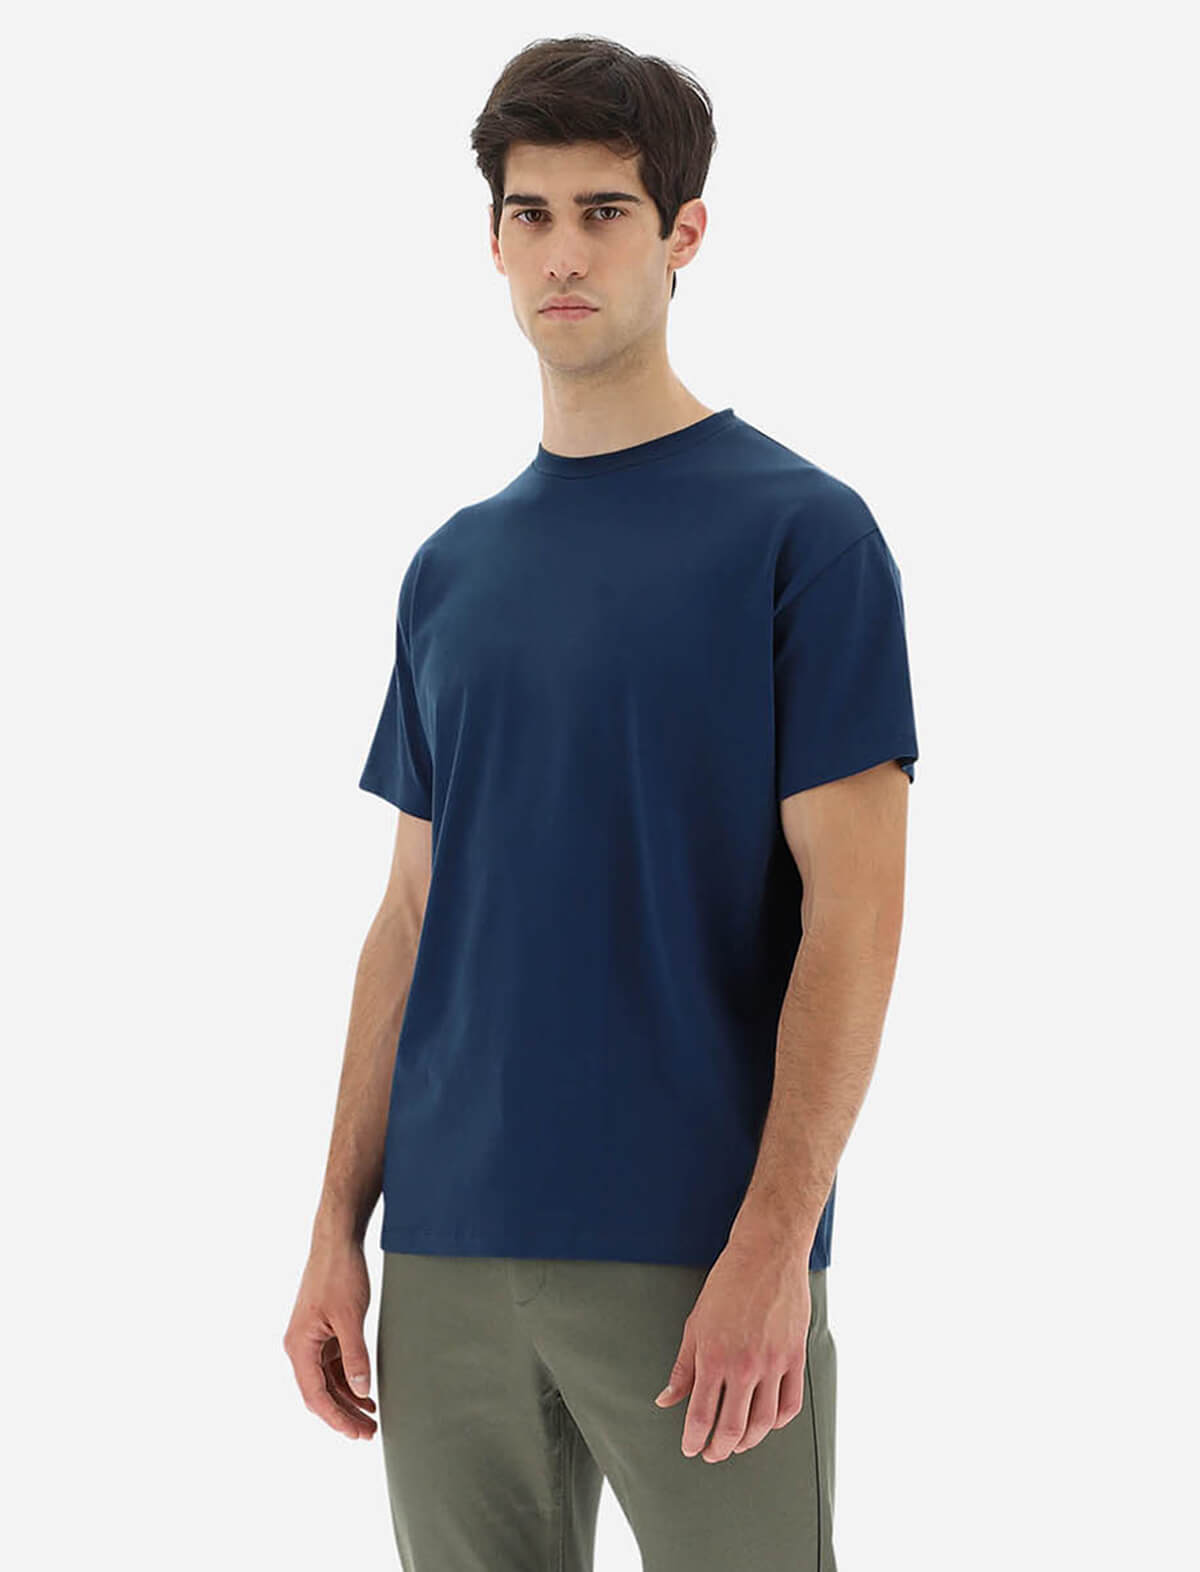 HERNO Superfine Cotton Stretch T-Shirt in Blue Navy